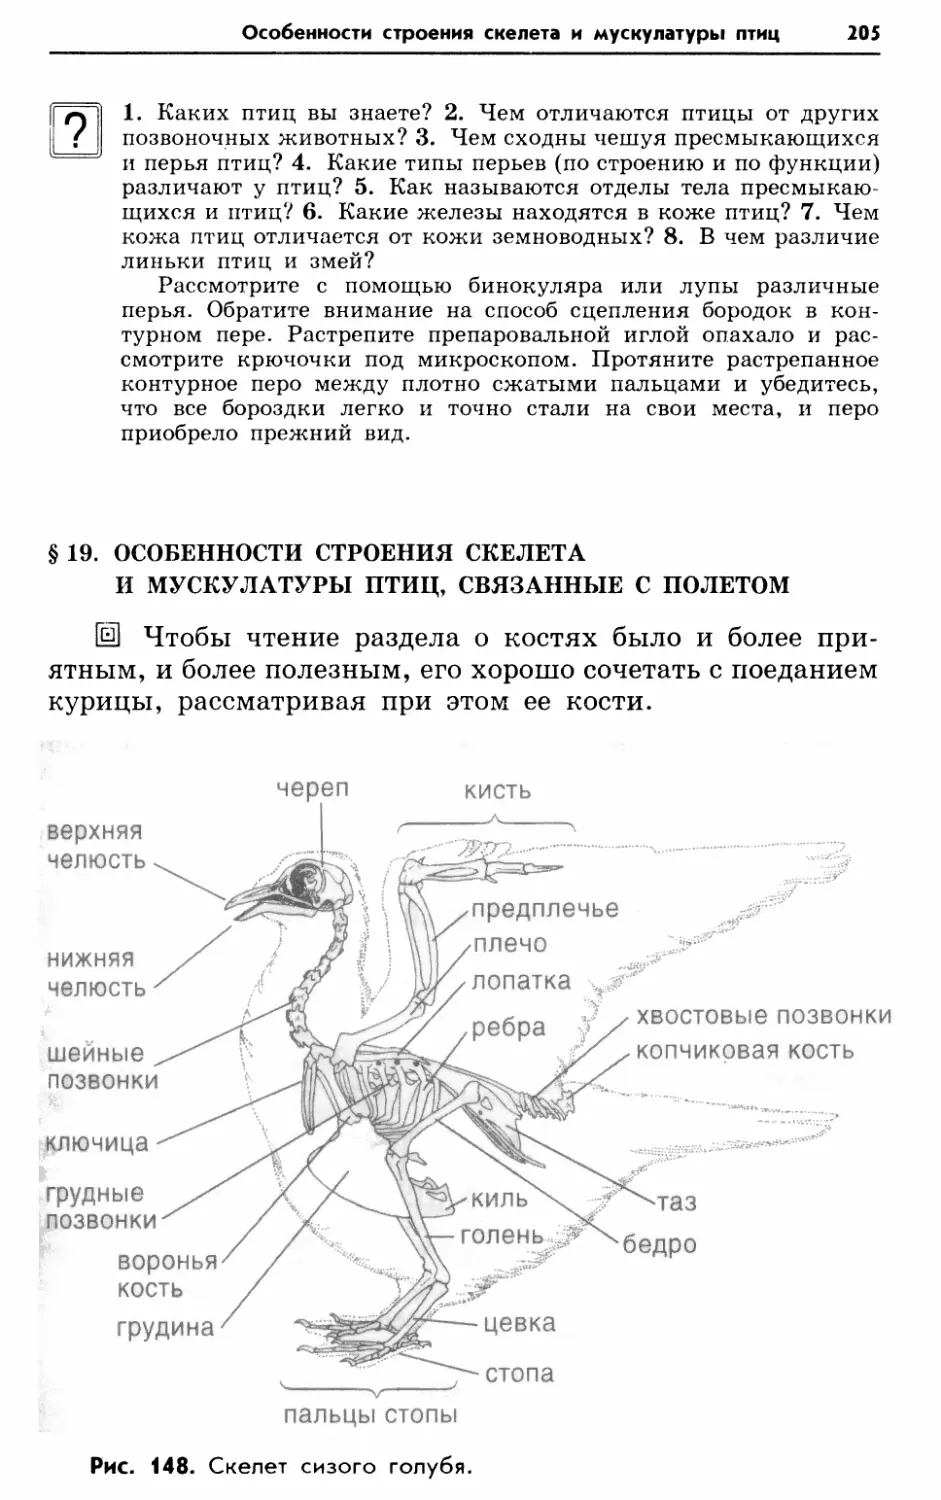 § 19. Особенности строения скелета и мускулатуры птиц, связанные с полетом